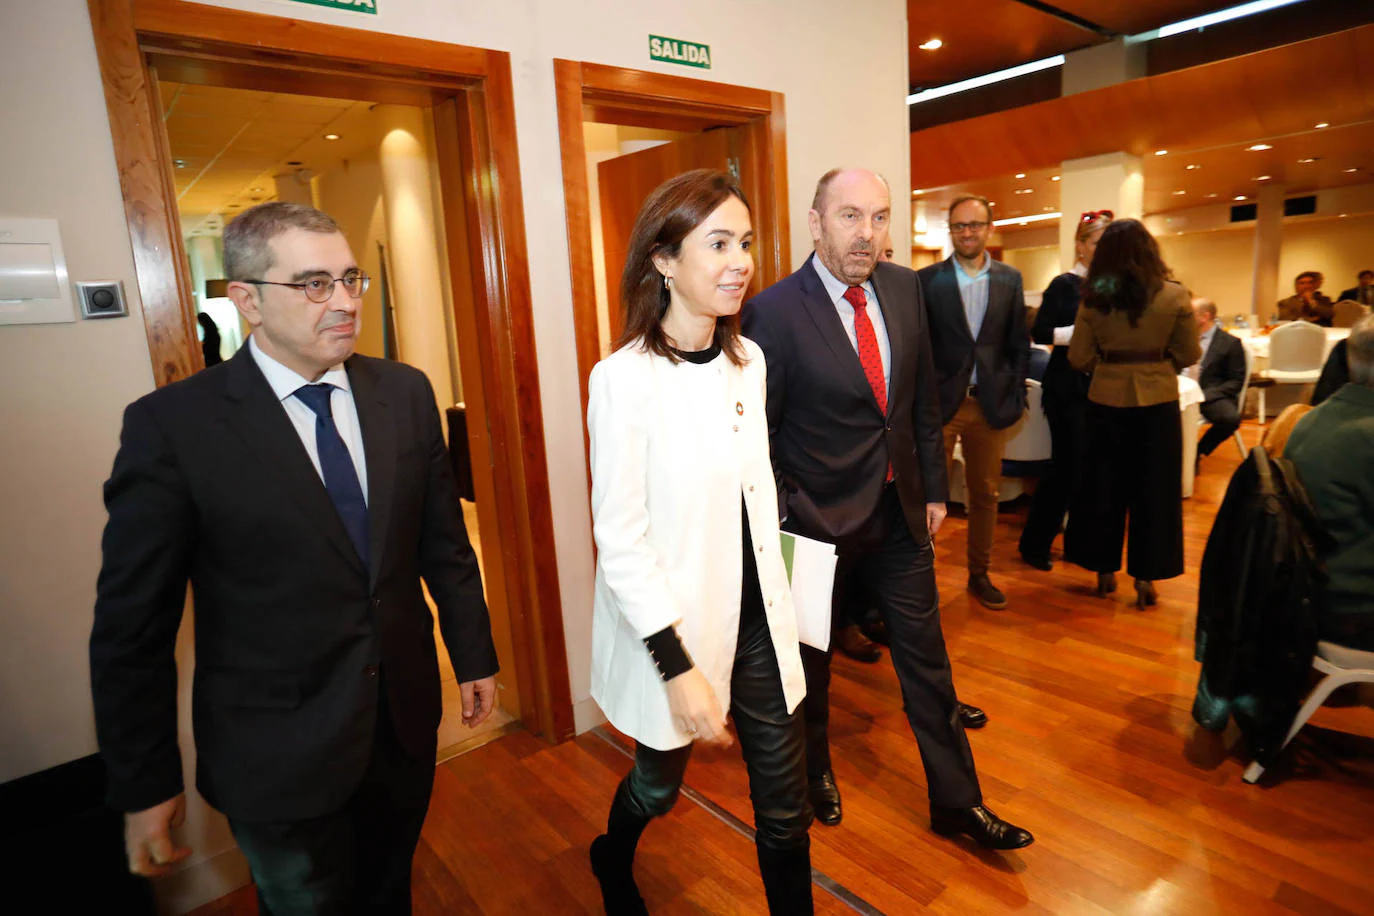 La presidenta de Adif, Isabel Pardo de Vera, ha analizado en el Fórum EL COMERCIO el presente y futuro de las infraestructuras ferroviarias de Asturias.